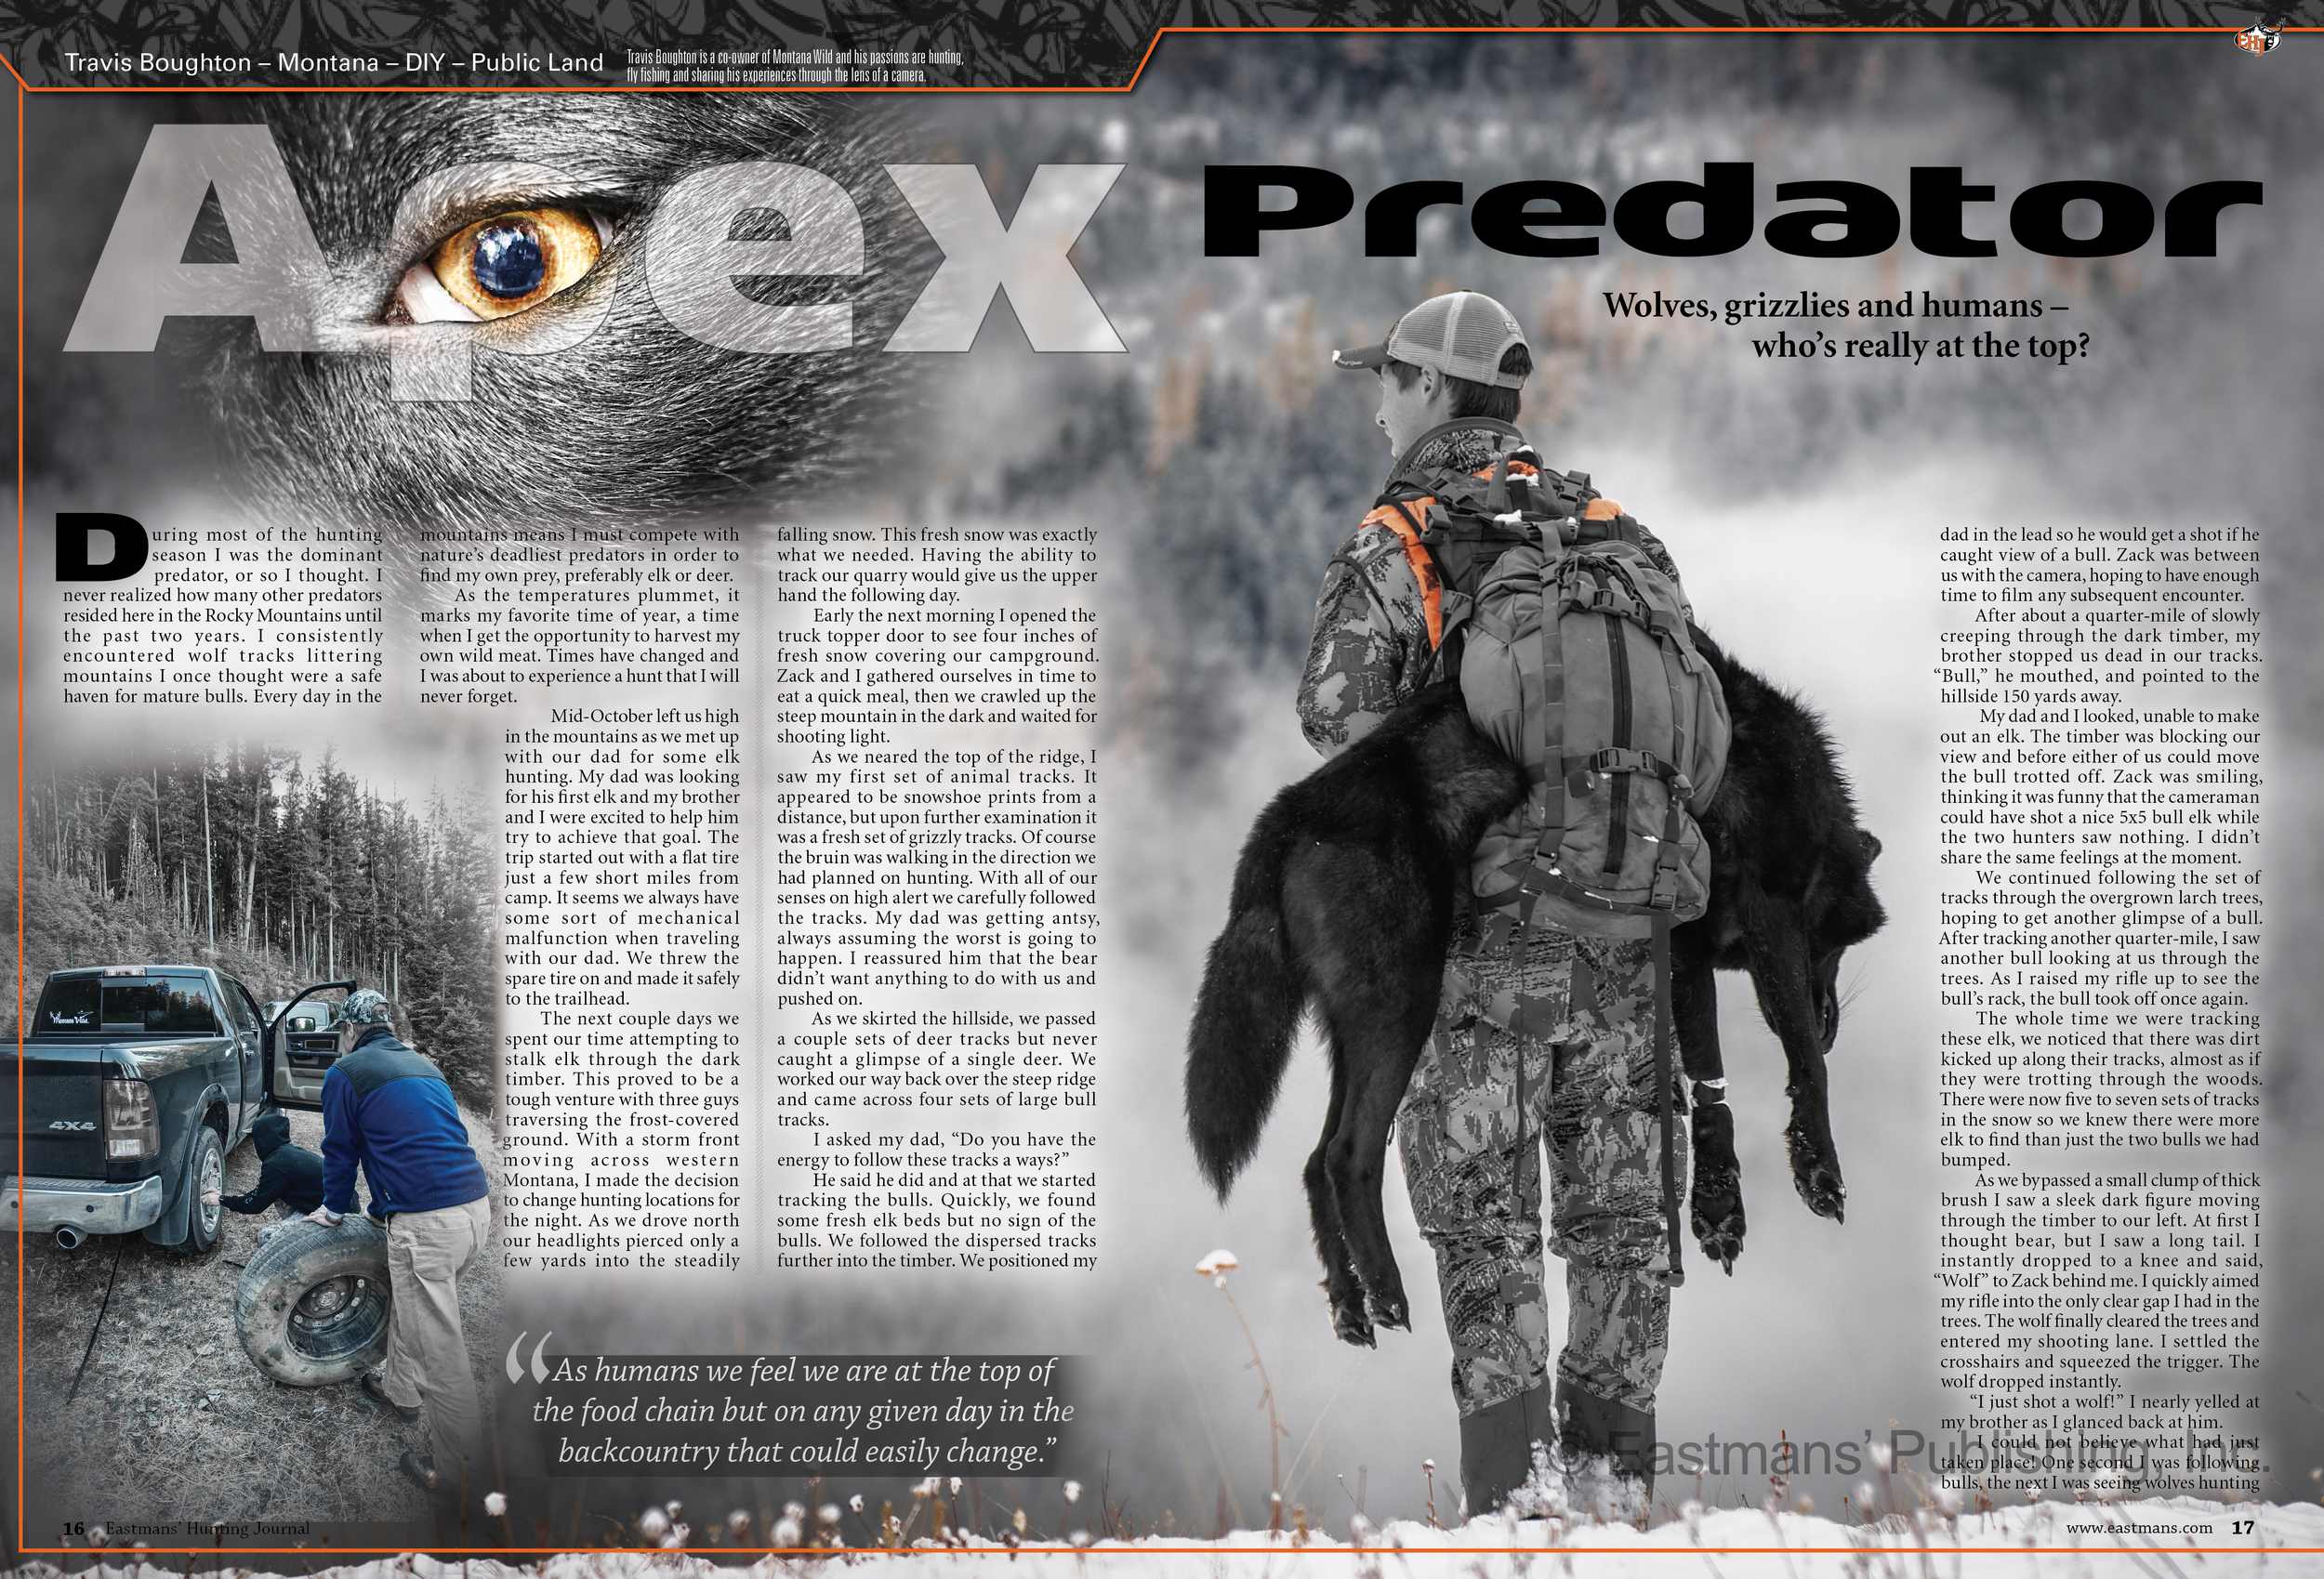 Apex Predator - © Eastmans' Publishing, Inc.